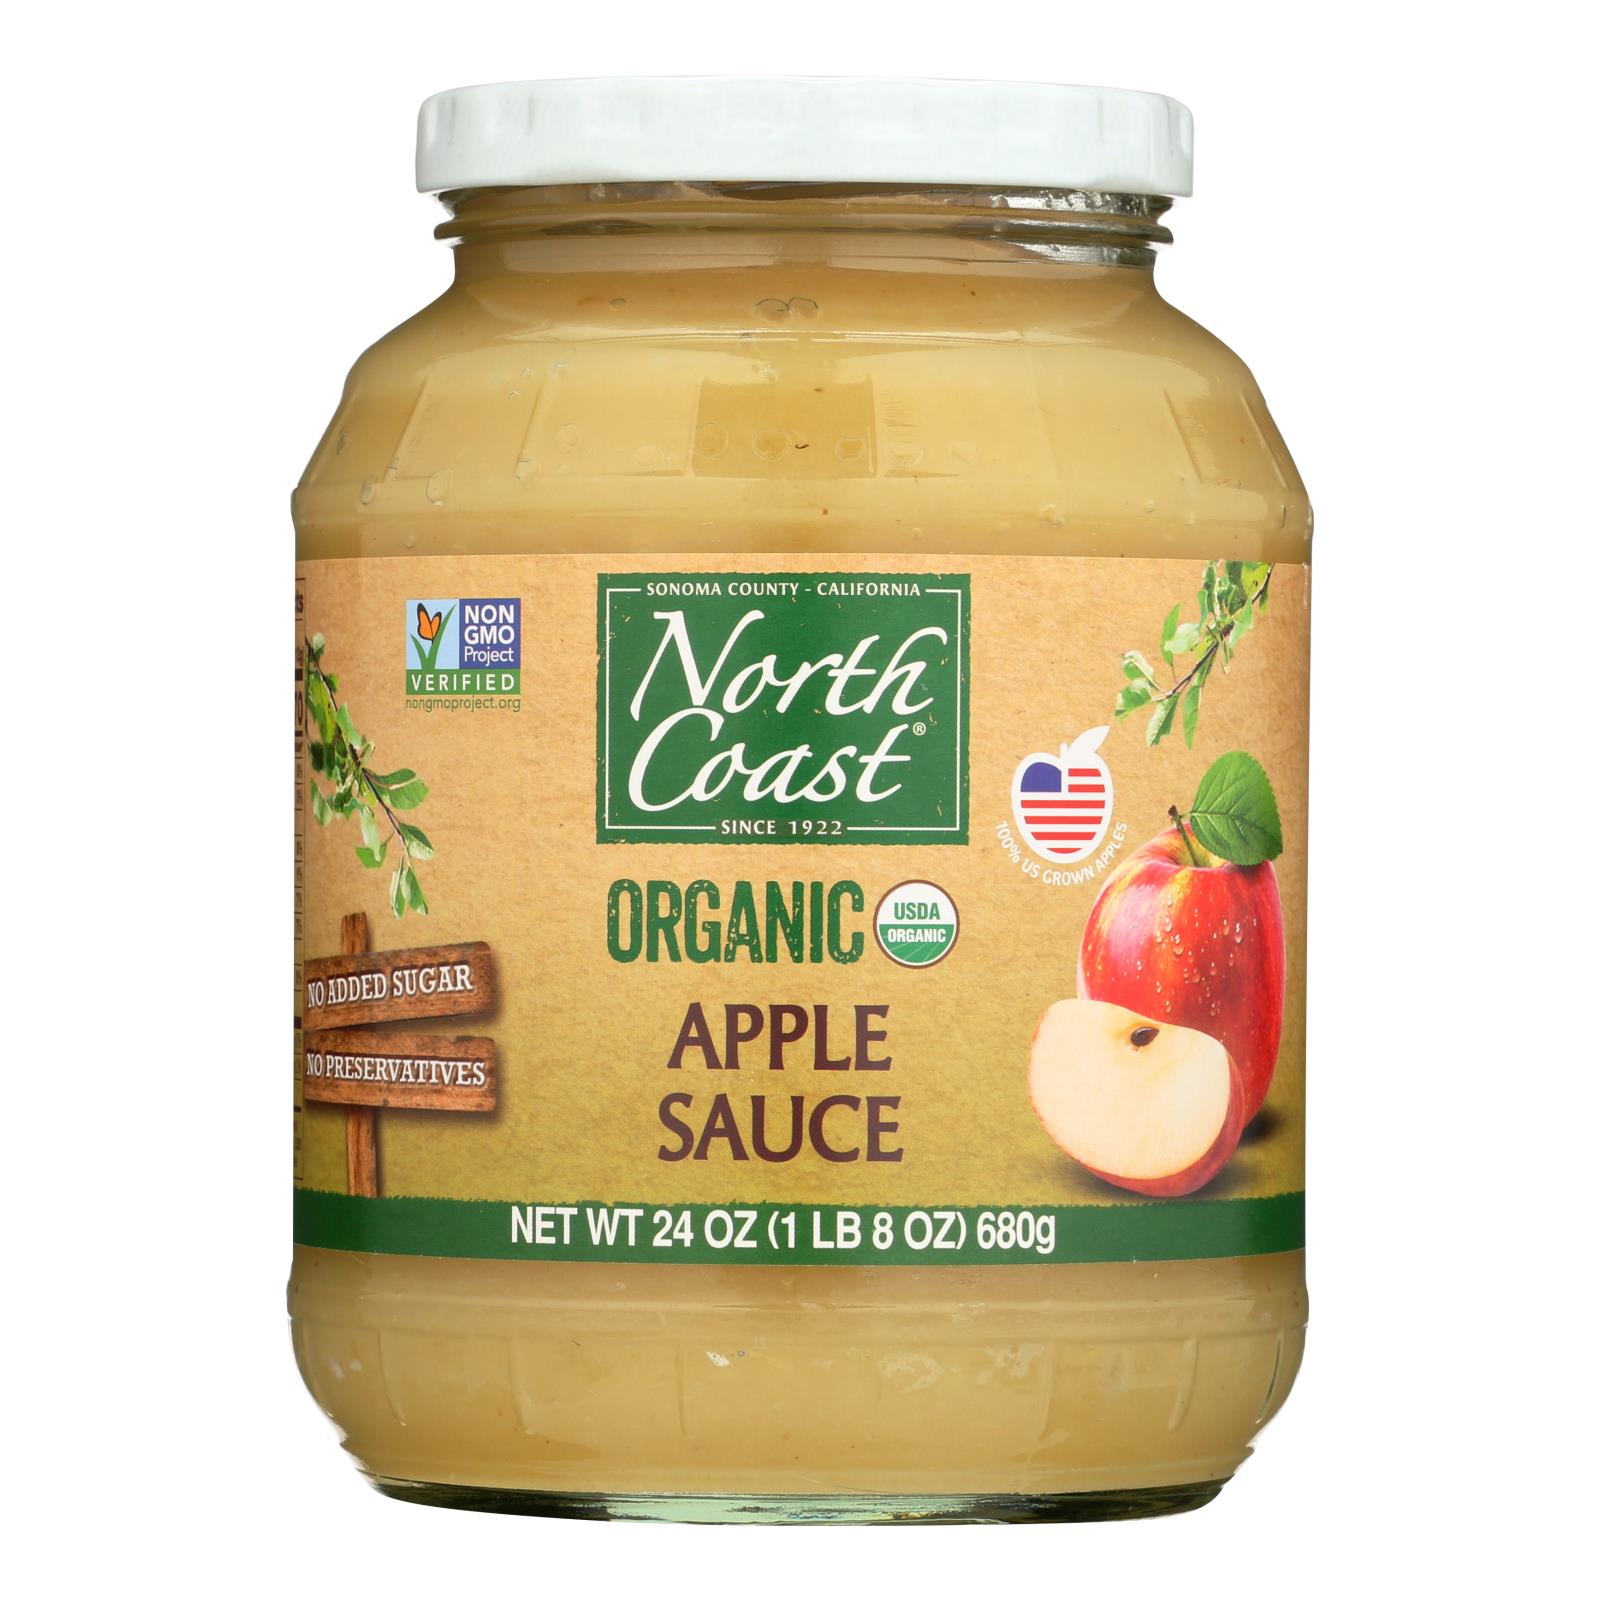 North Coast Organic Apple Sauce - 12개 묶음상품 - 24 FZ